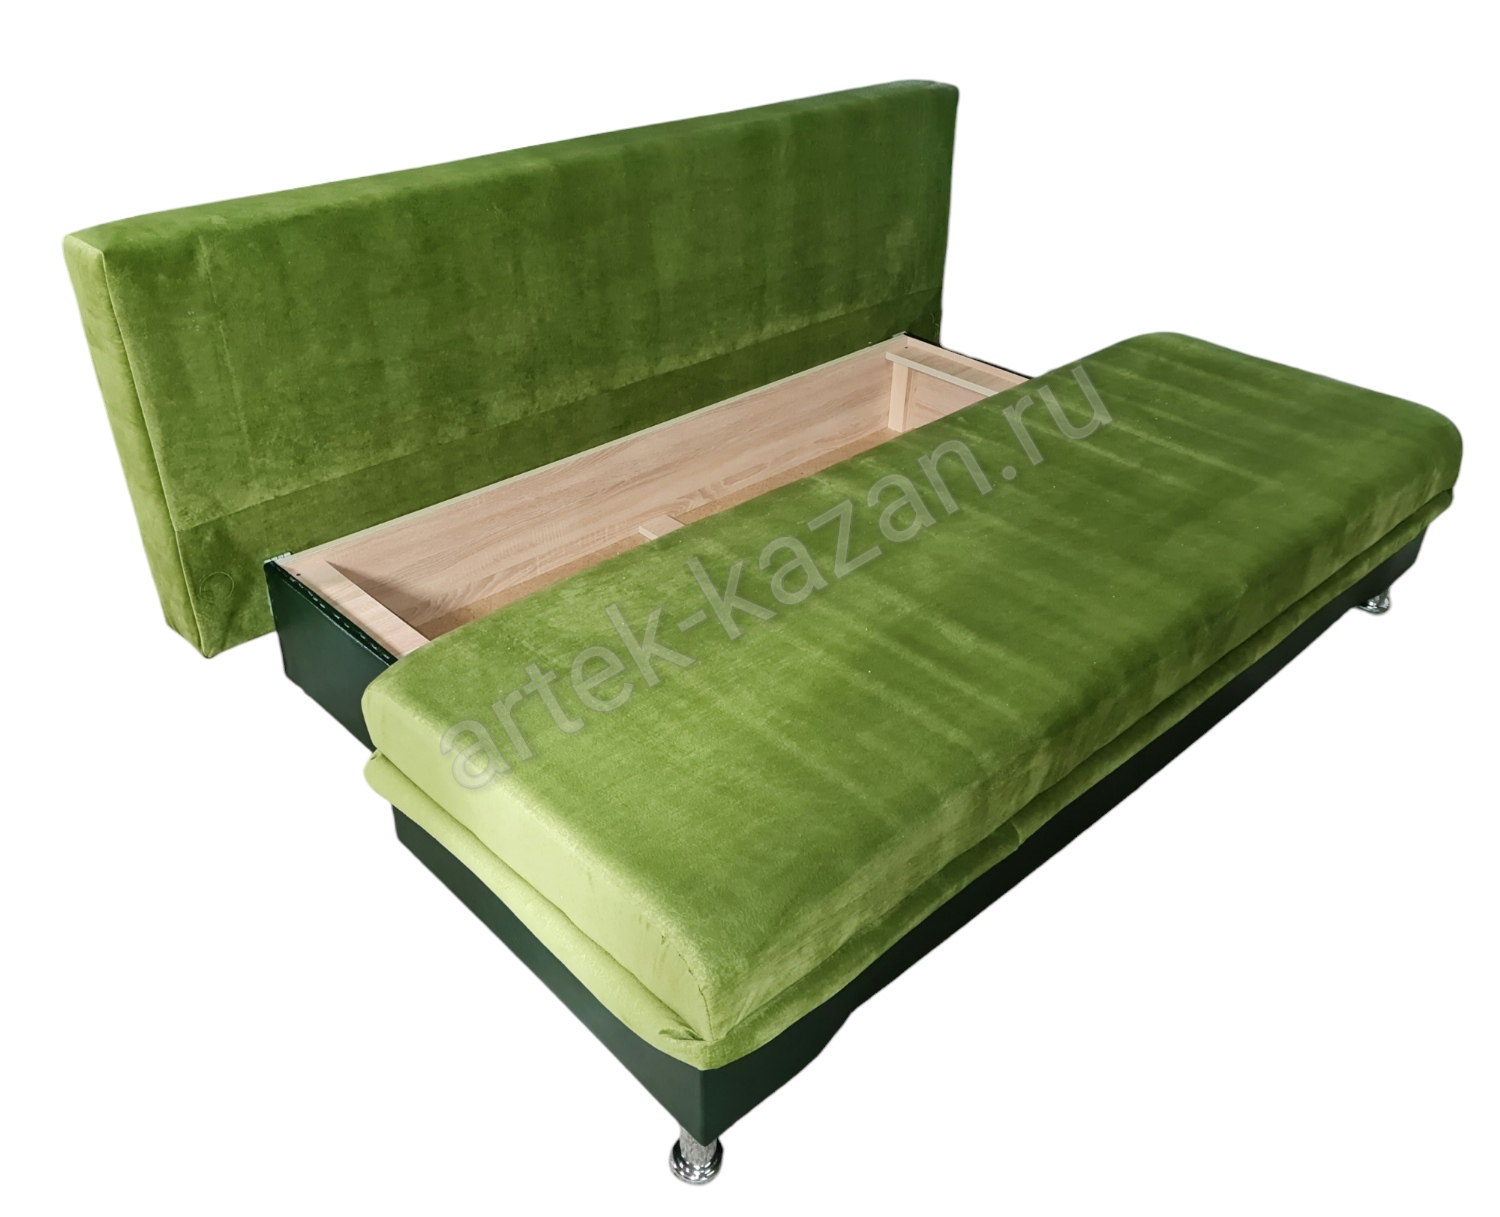 Фото 7. Купить недорогой диван по низкой цене от производителя можно у нас.